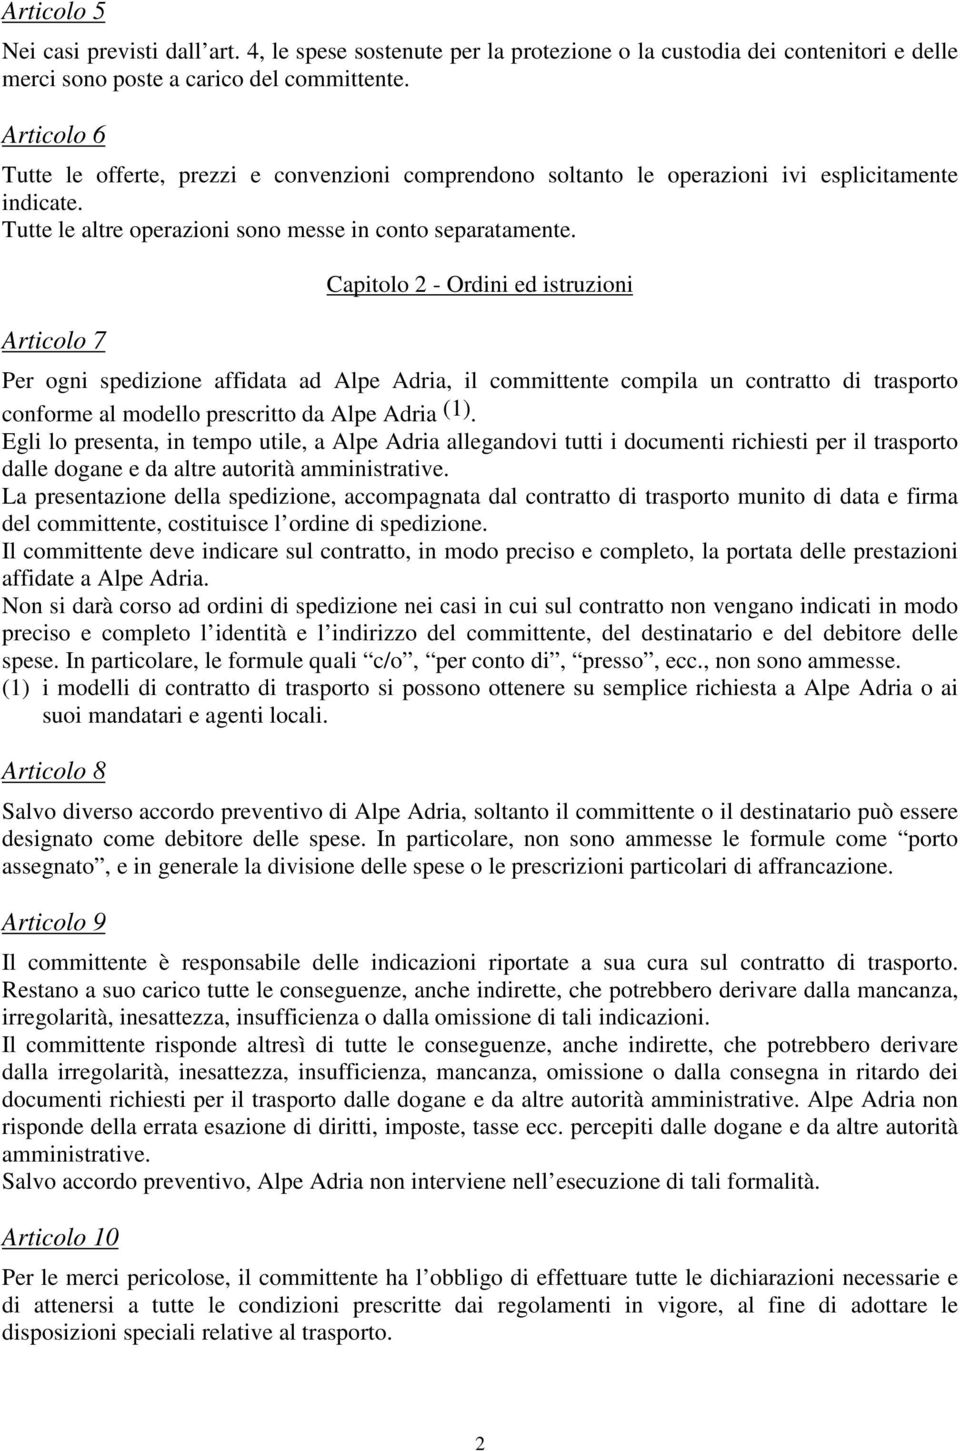 Articolo 7 Capitolo 2 - Ordini ed istruzioni Per ogni spedizione affidata ad Alpe Adria, il committente compila un contratto di trasporto conforme al modello prescritto da Alpe Adria (1).